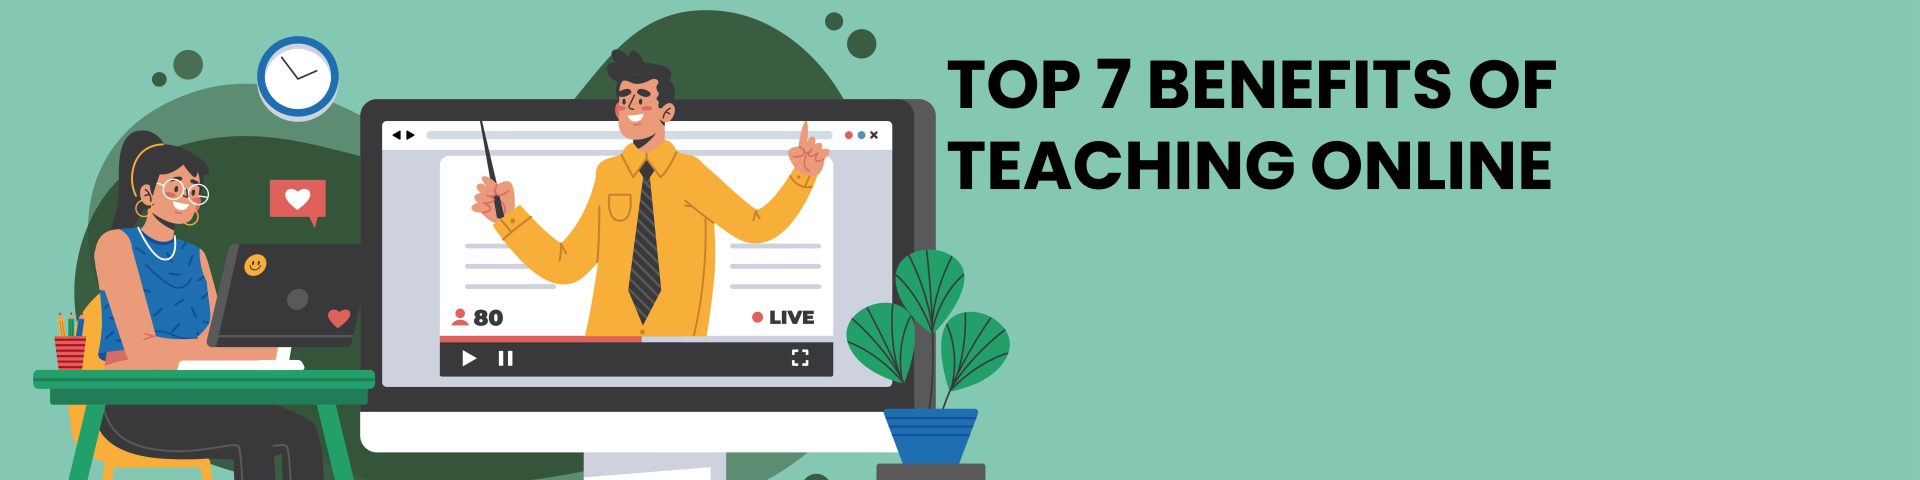 Top 7 Benefits of Online Teaching